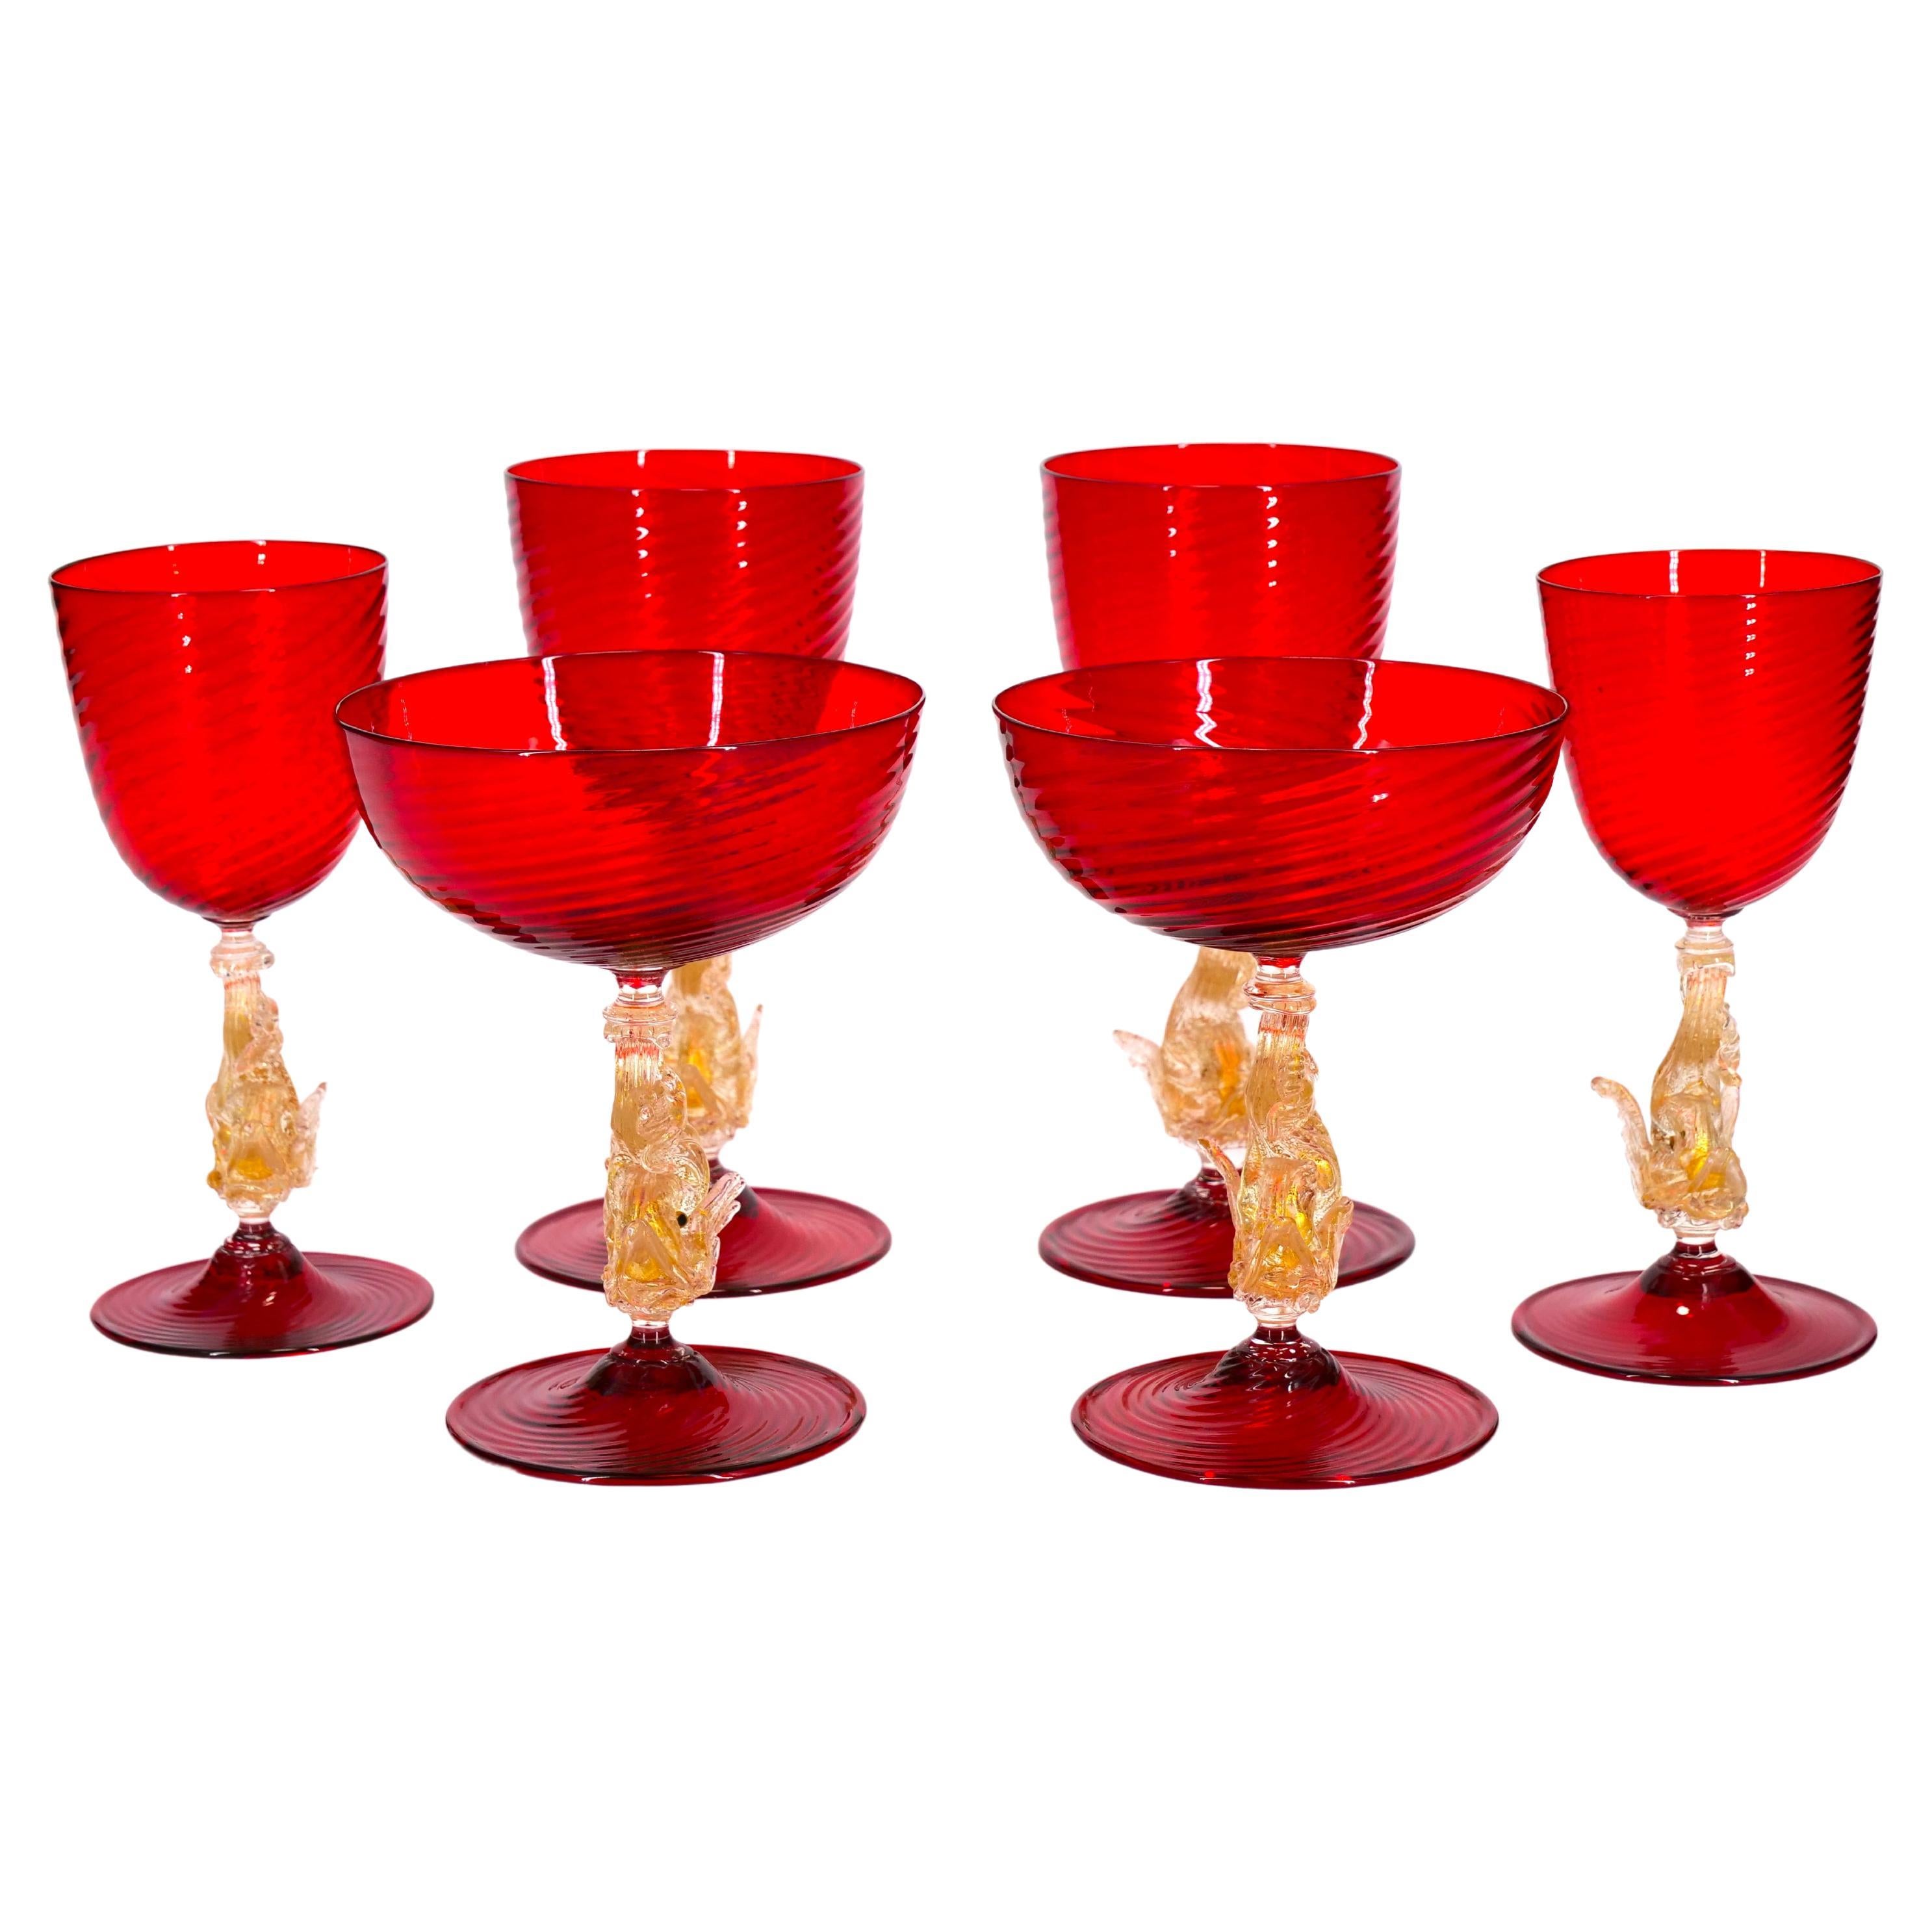 Murano Glass Barware / Tableware Set